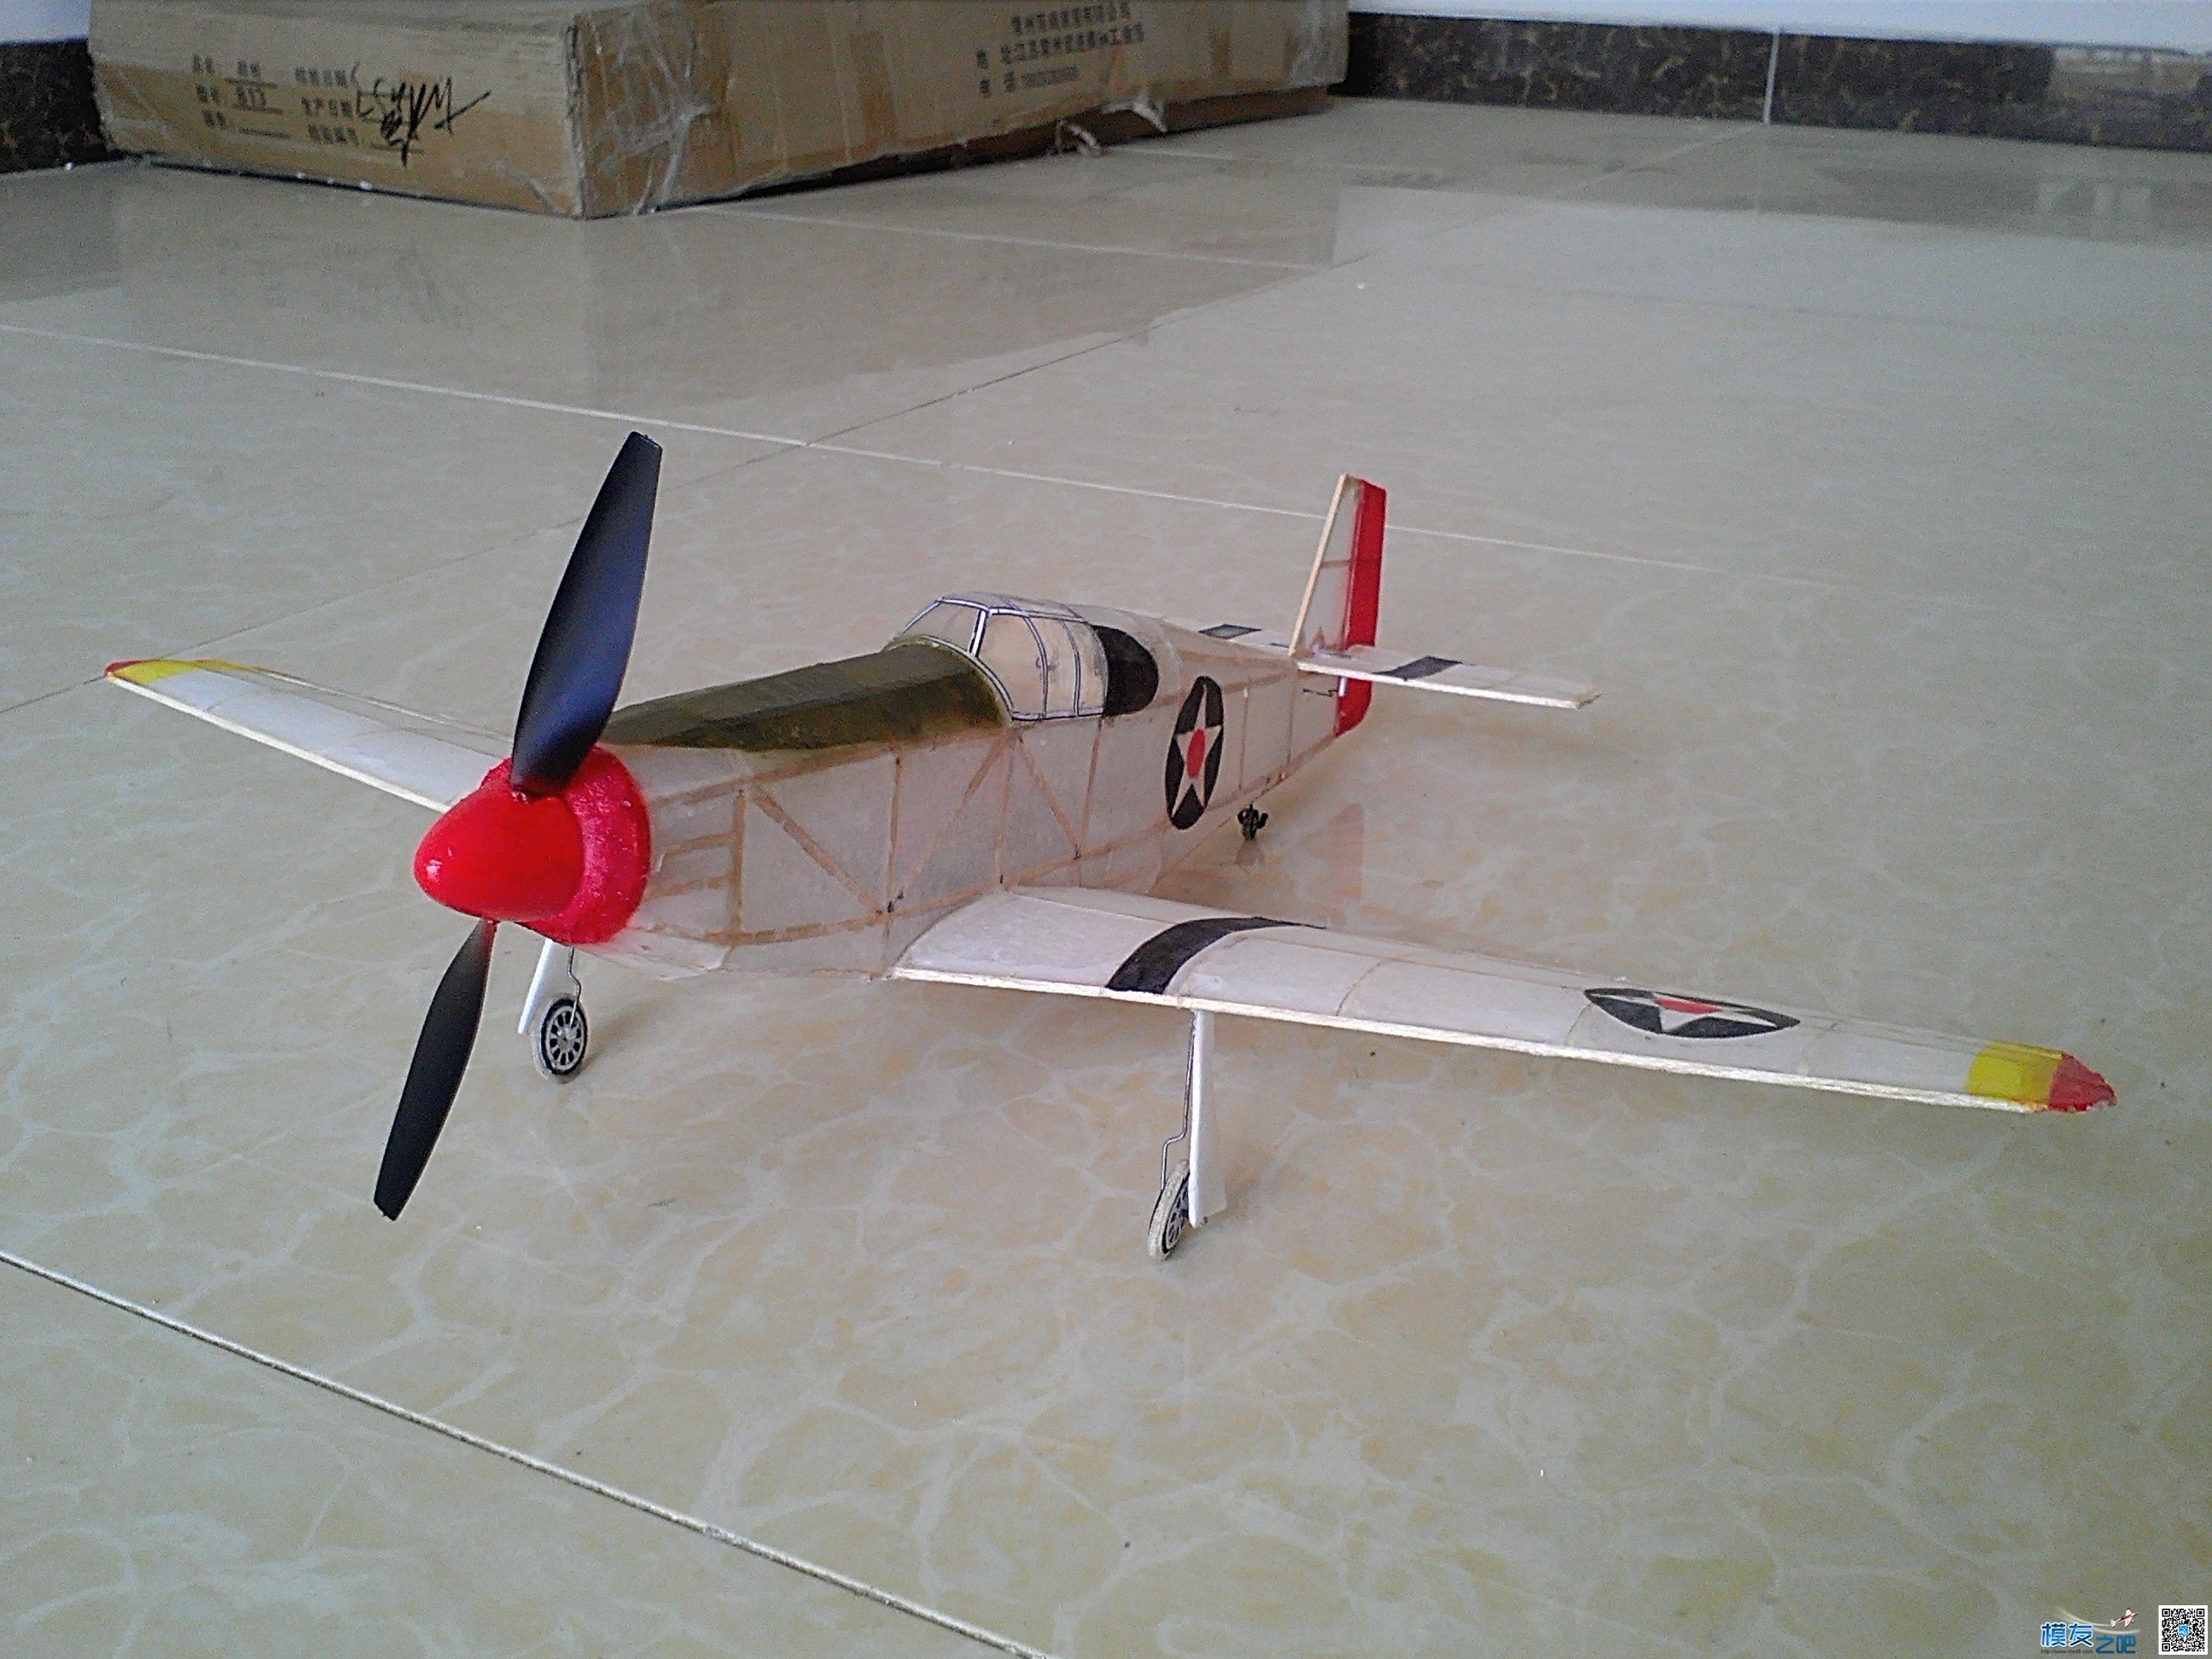 迷你轻木机野马P51a 固定翼,舵机,图纸,接收机 作者:飞翔的橡皮筋 5604 